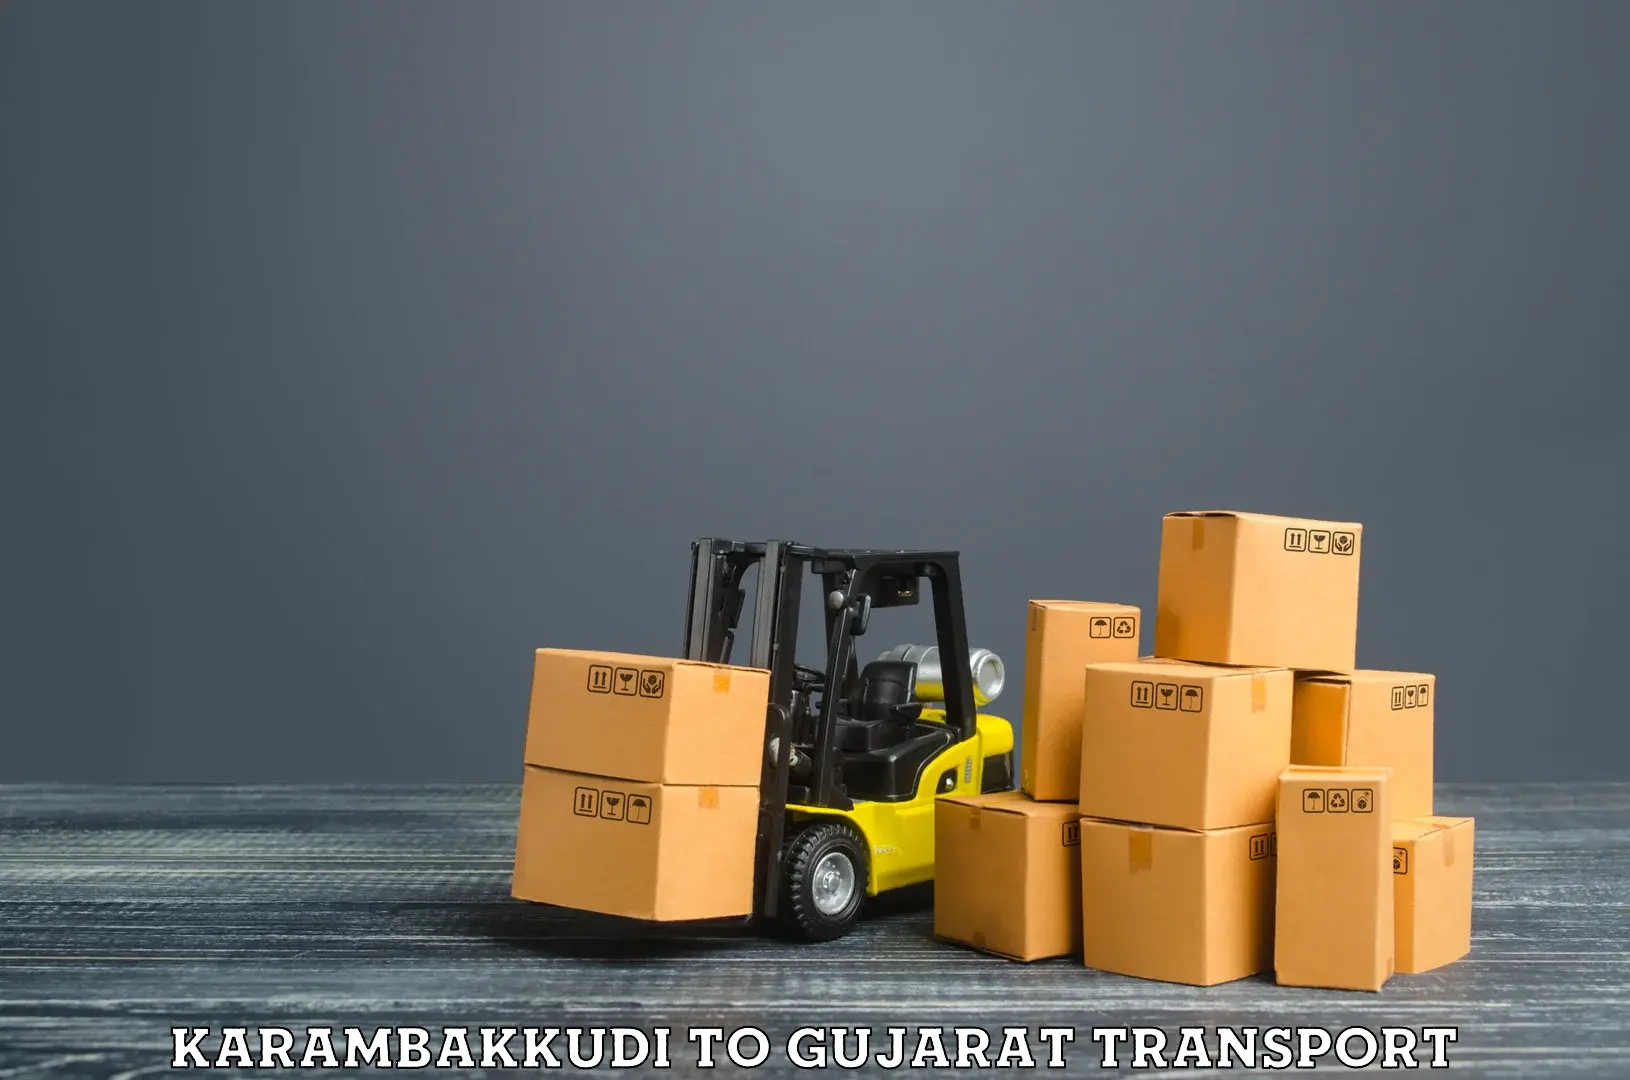 Vehicle courier services Karambakkudi to IIT Gandhi Nagar